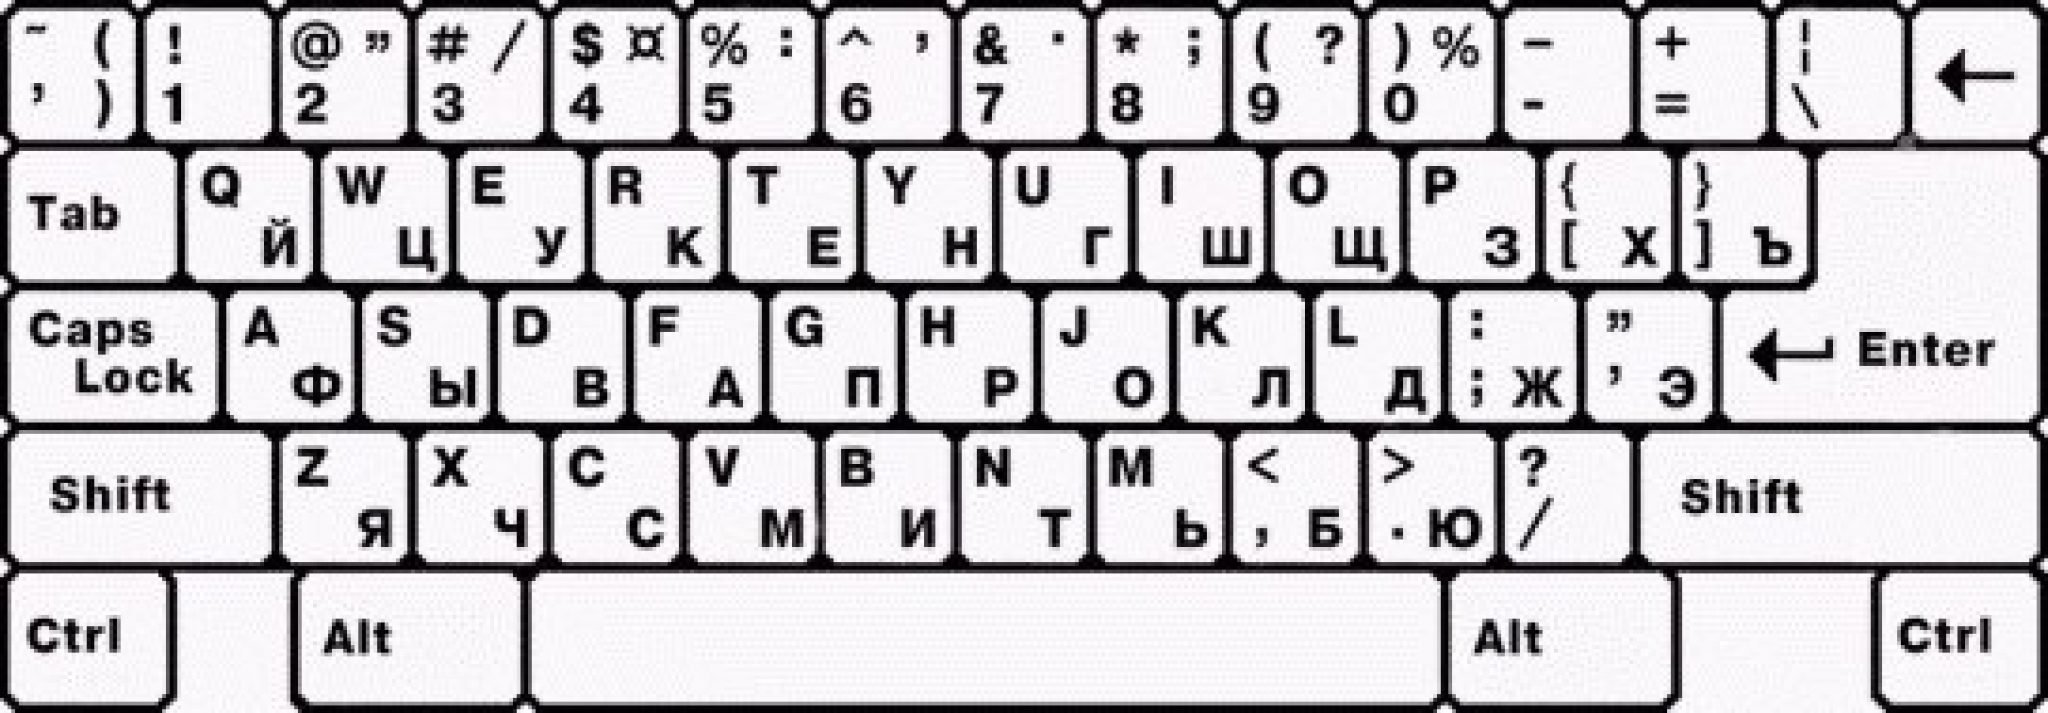 Компьютер на английской раскладке. Раскладка клавиатуры русско-английская схема. Клавиатура компьютера английская раскладка. Раскладка компьютерной клавиатуры русский английский. Раскладка клавиатуры русско-английская схема компьютера.